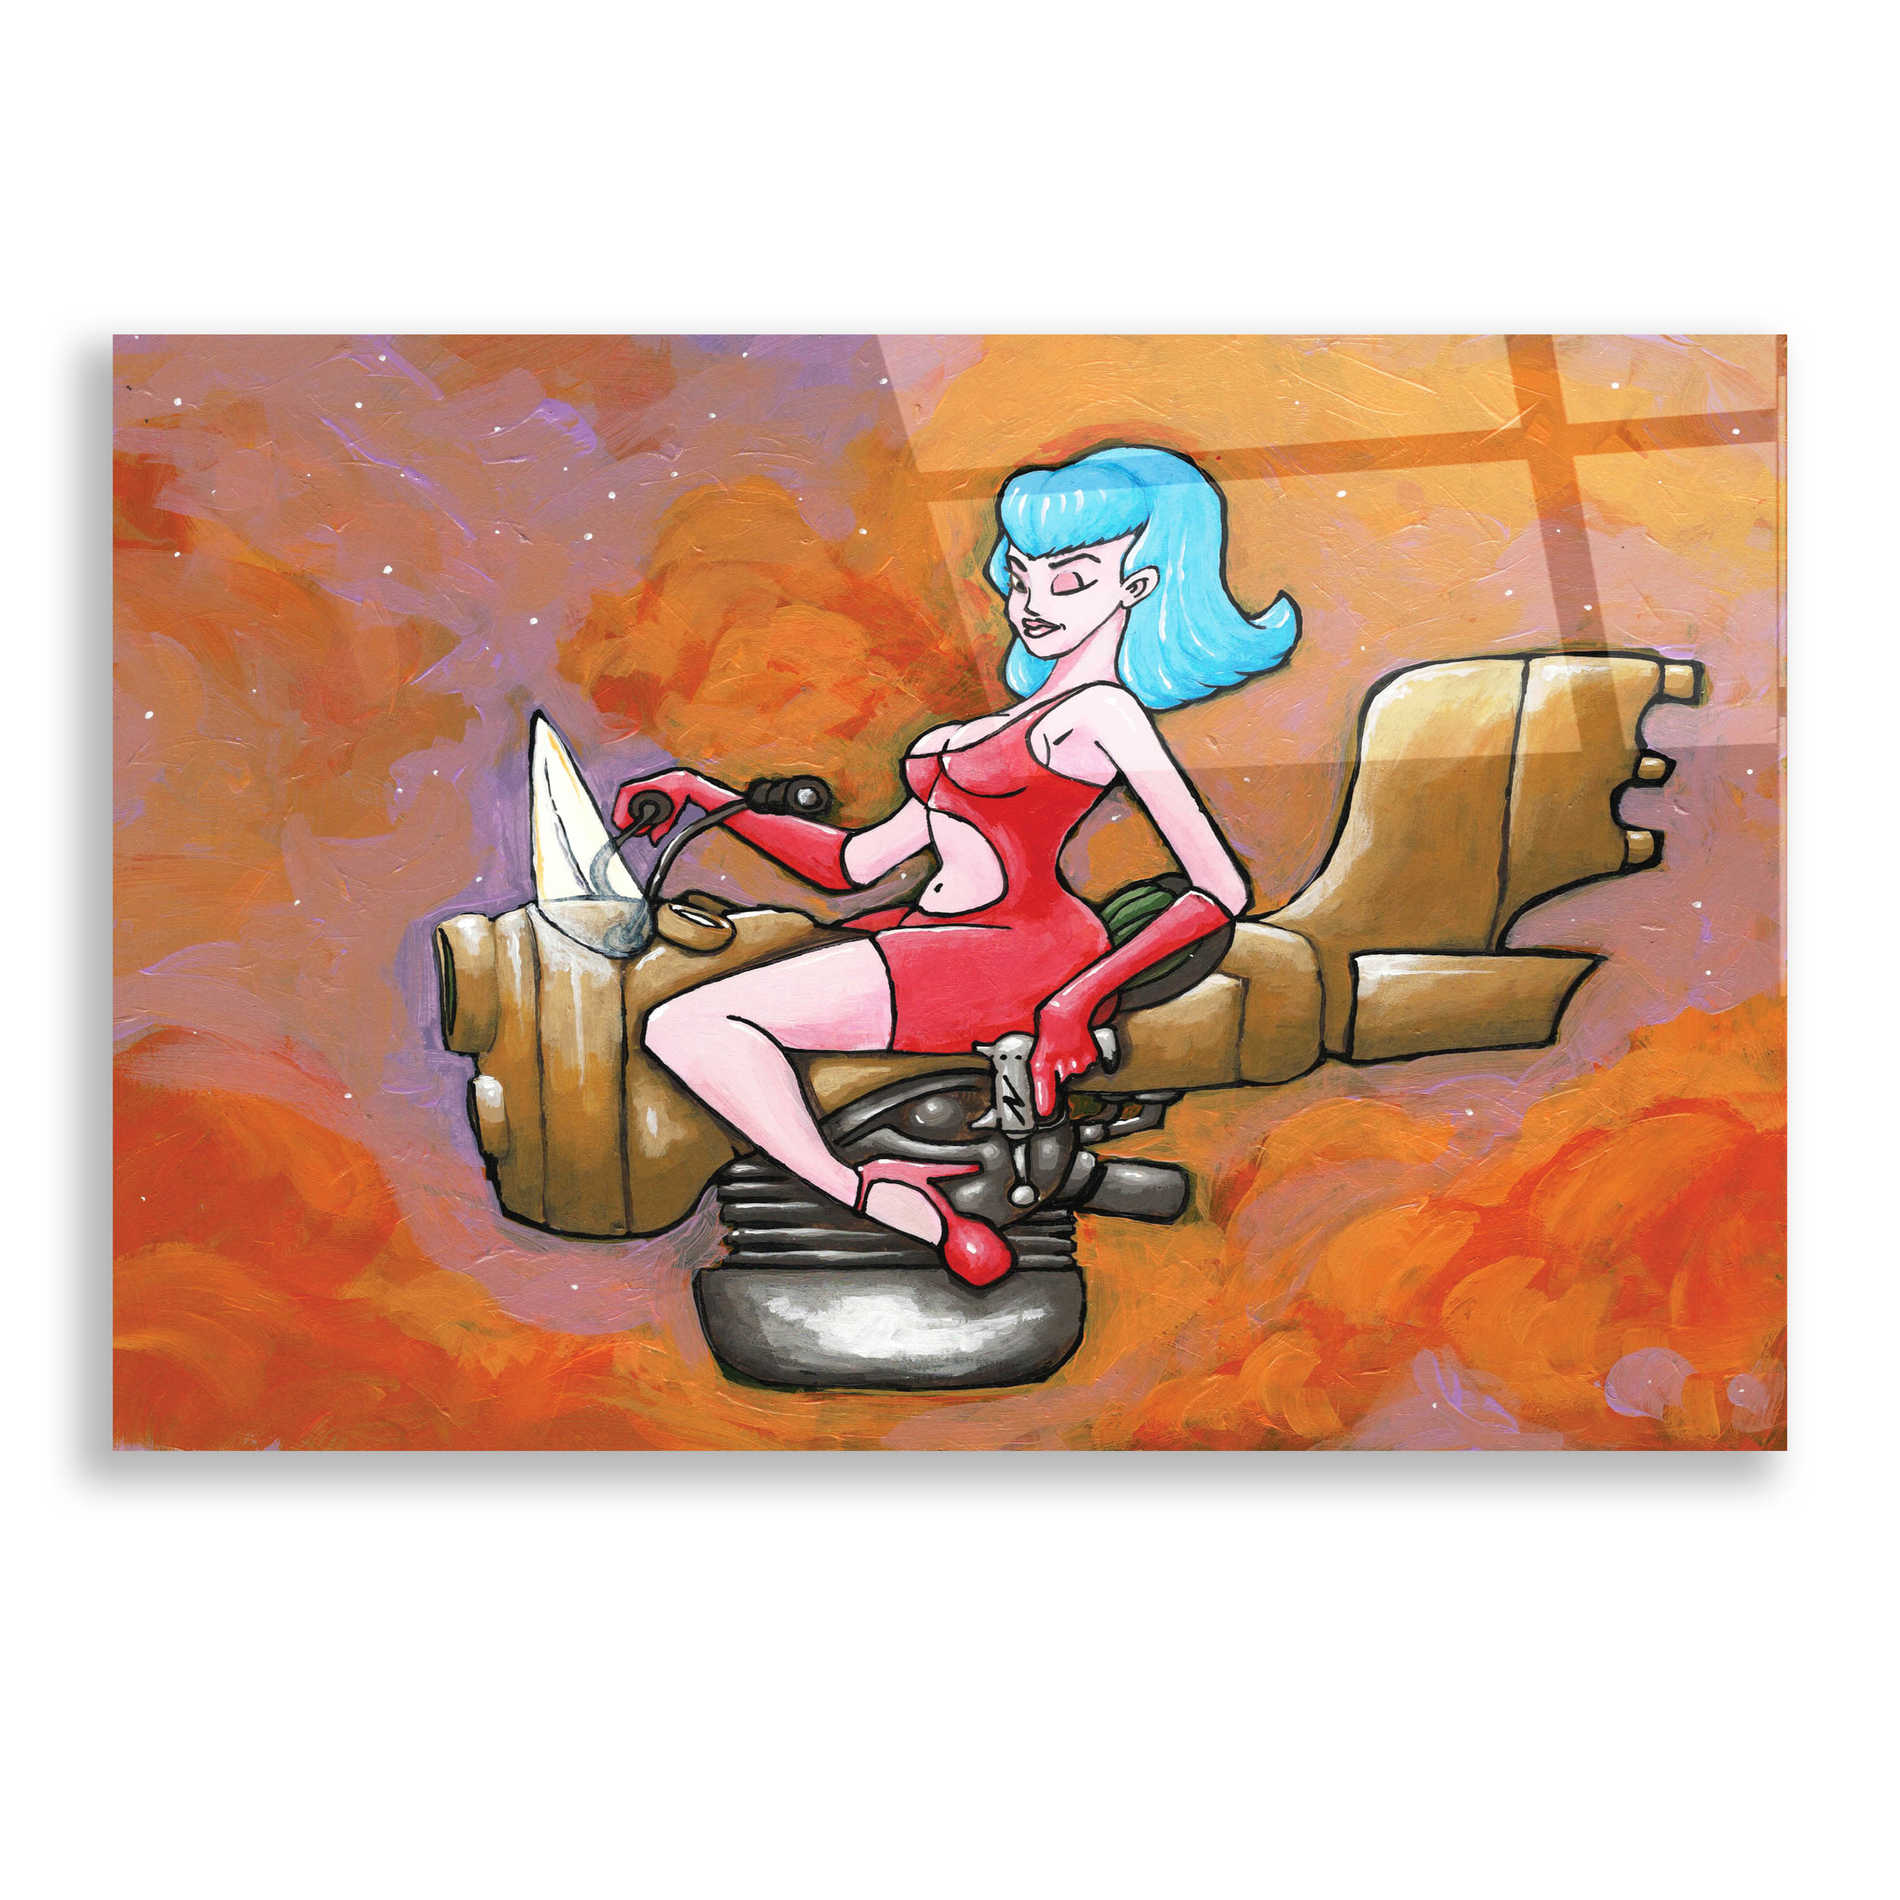 Epic Art 'Rocket Queen Paint' by Craig Snodgrass, Acrylic Glass Wall Art,24x16